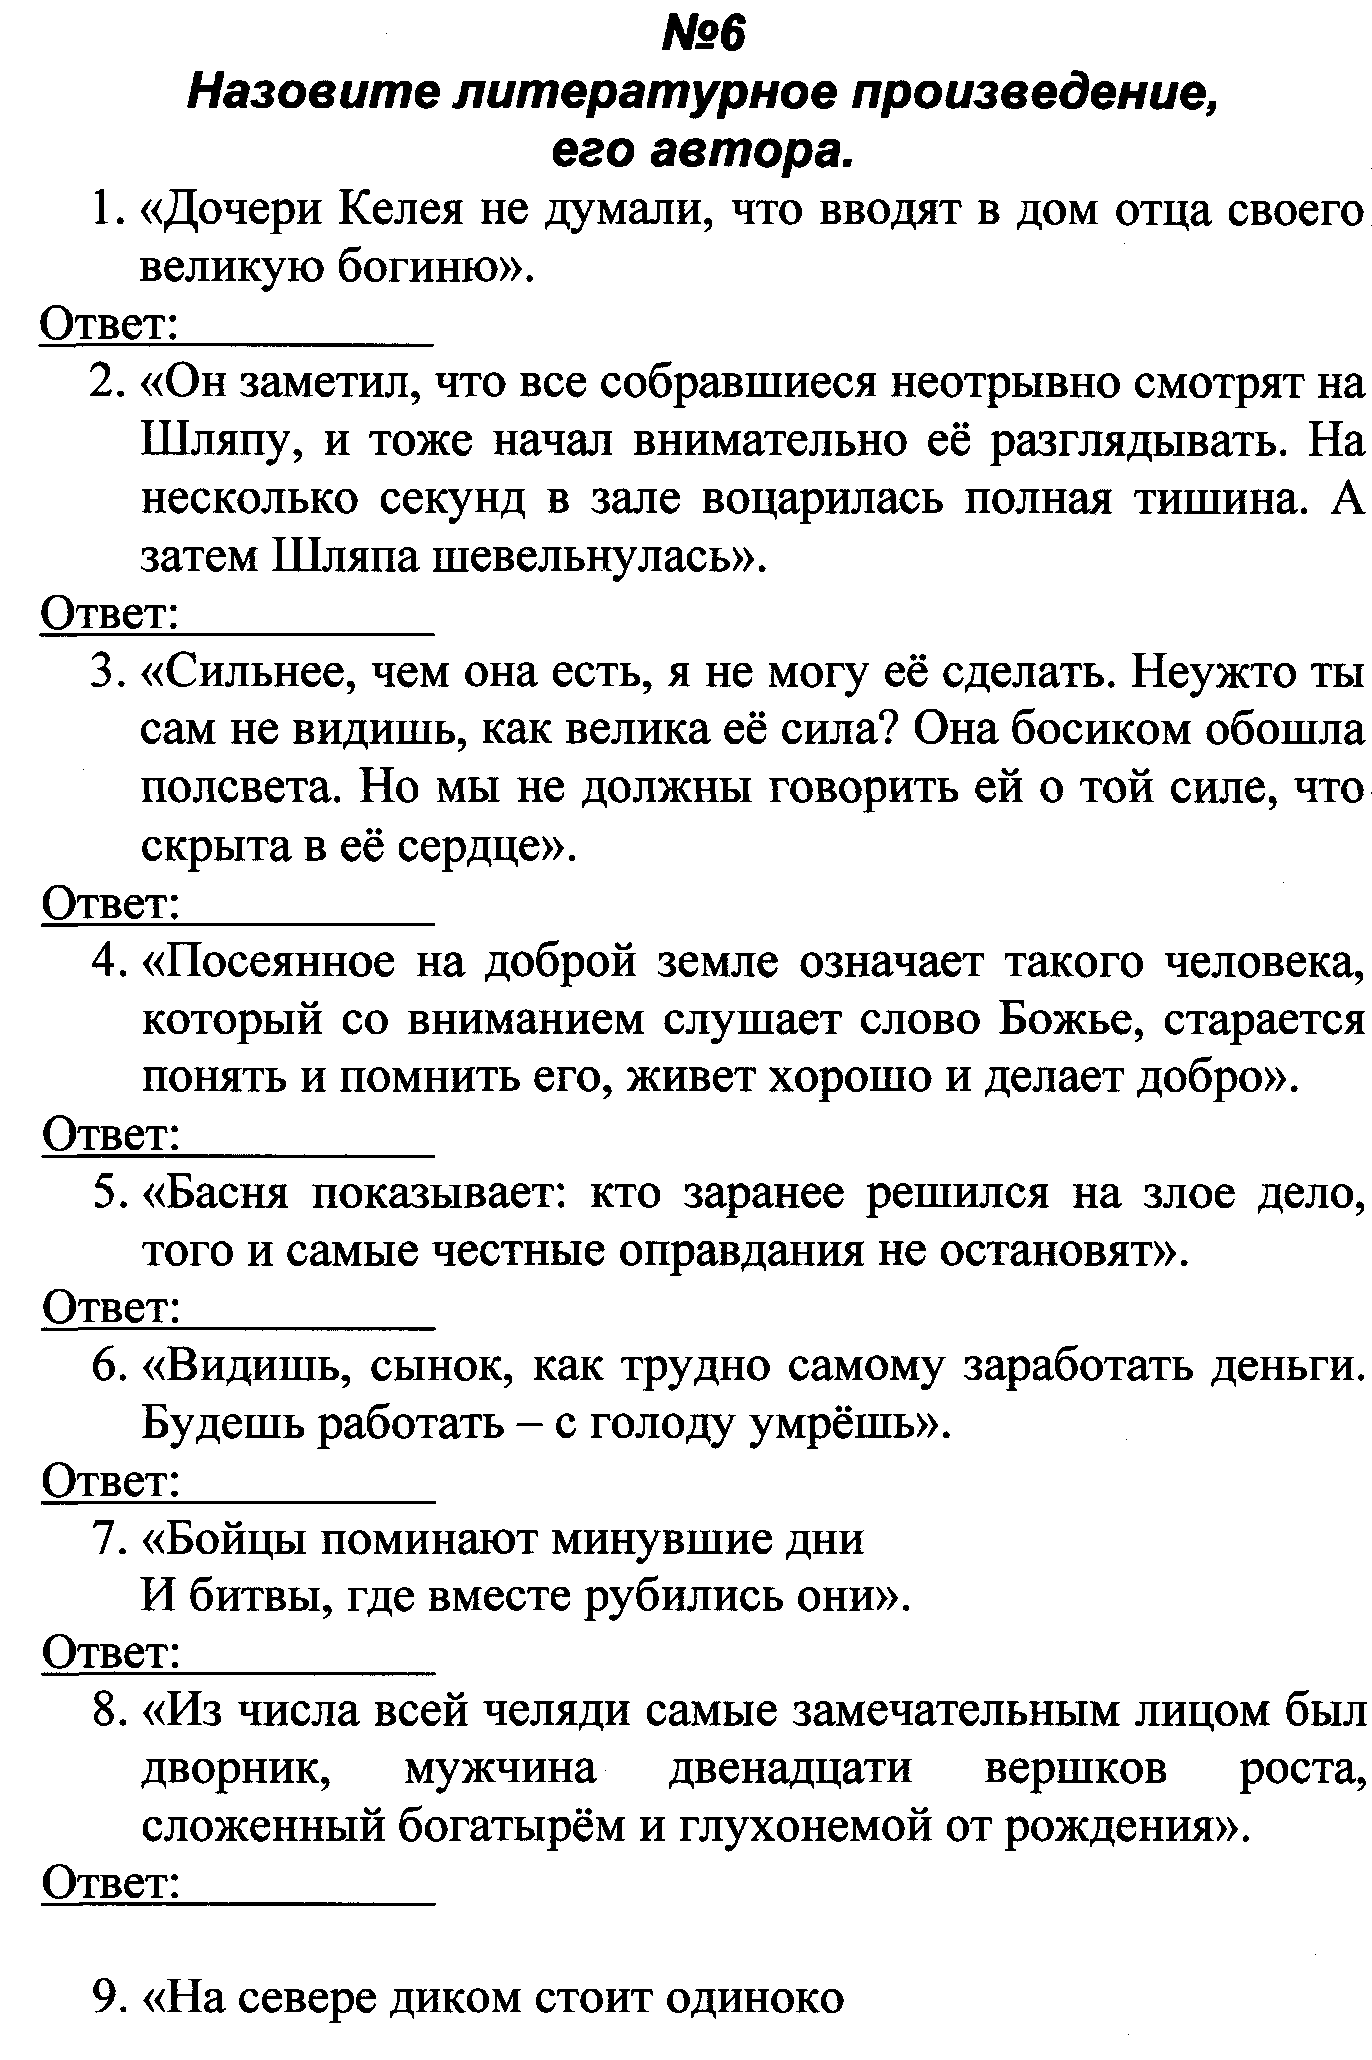 Компьютерный турнир по русскому языку .